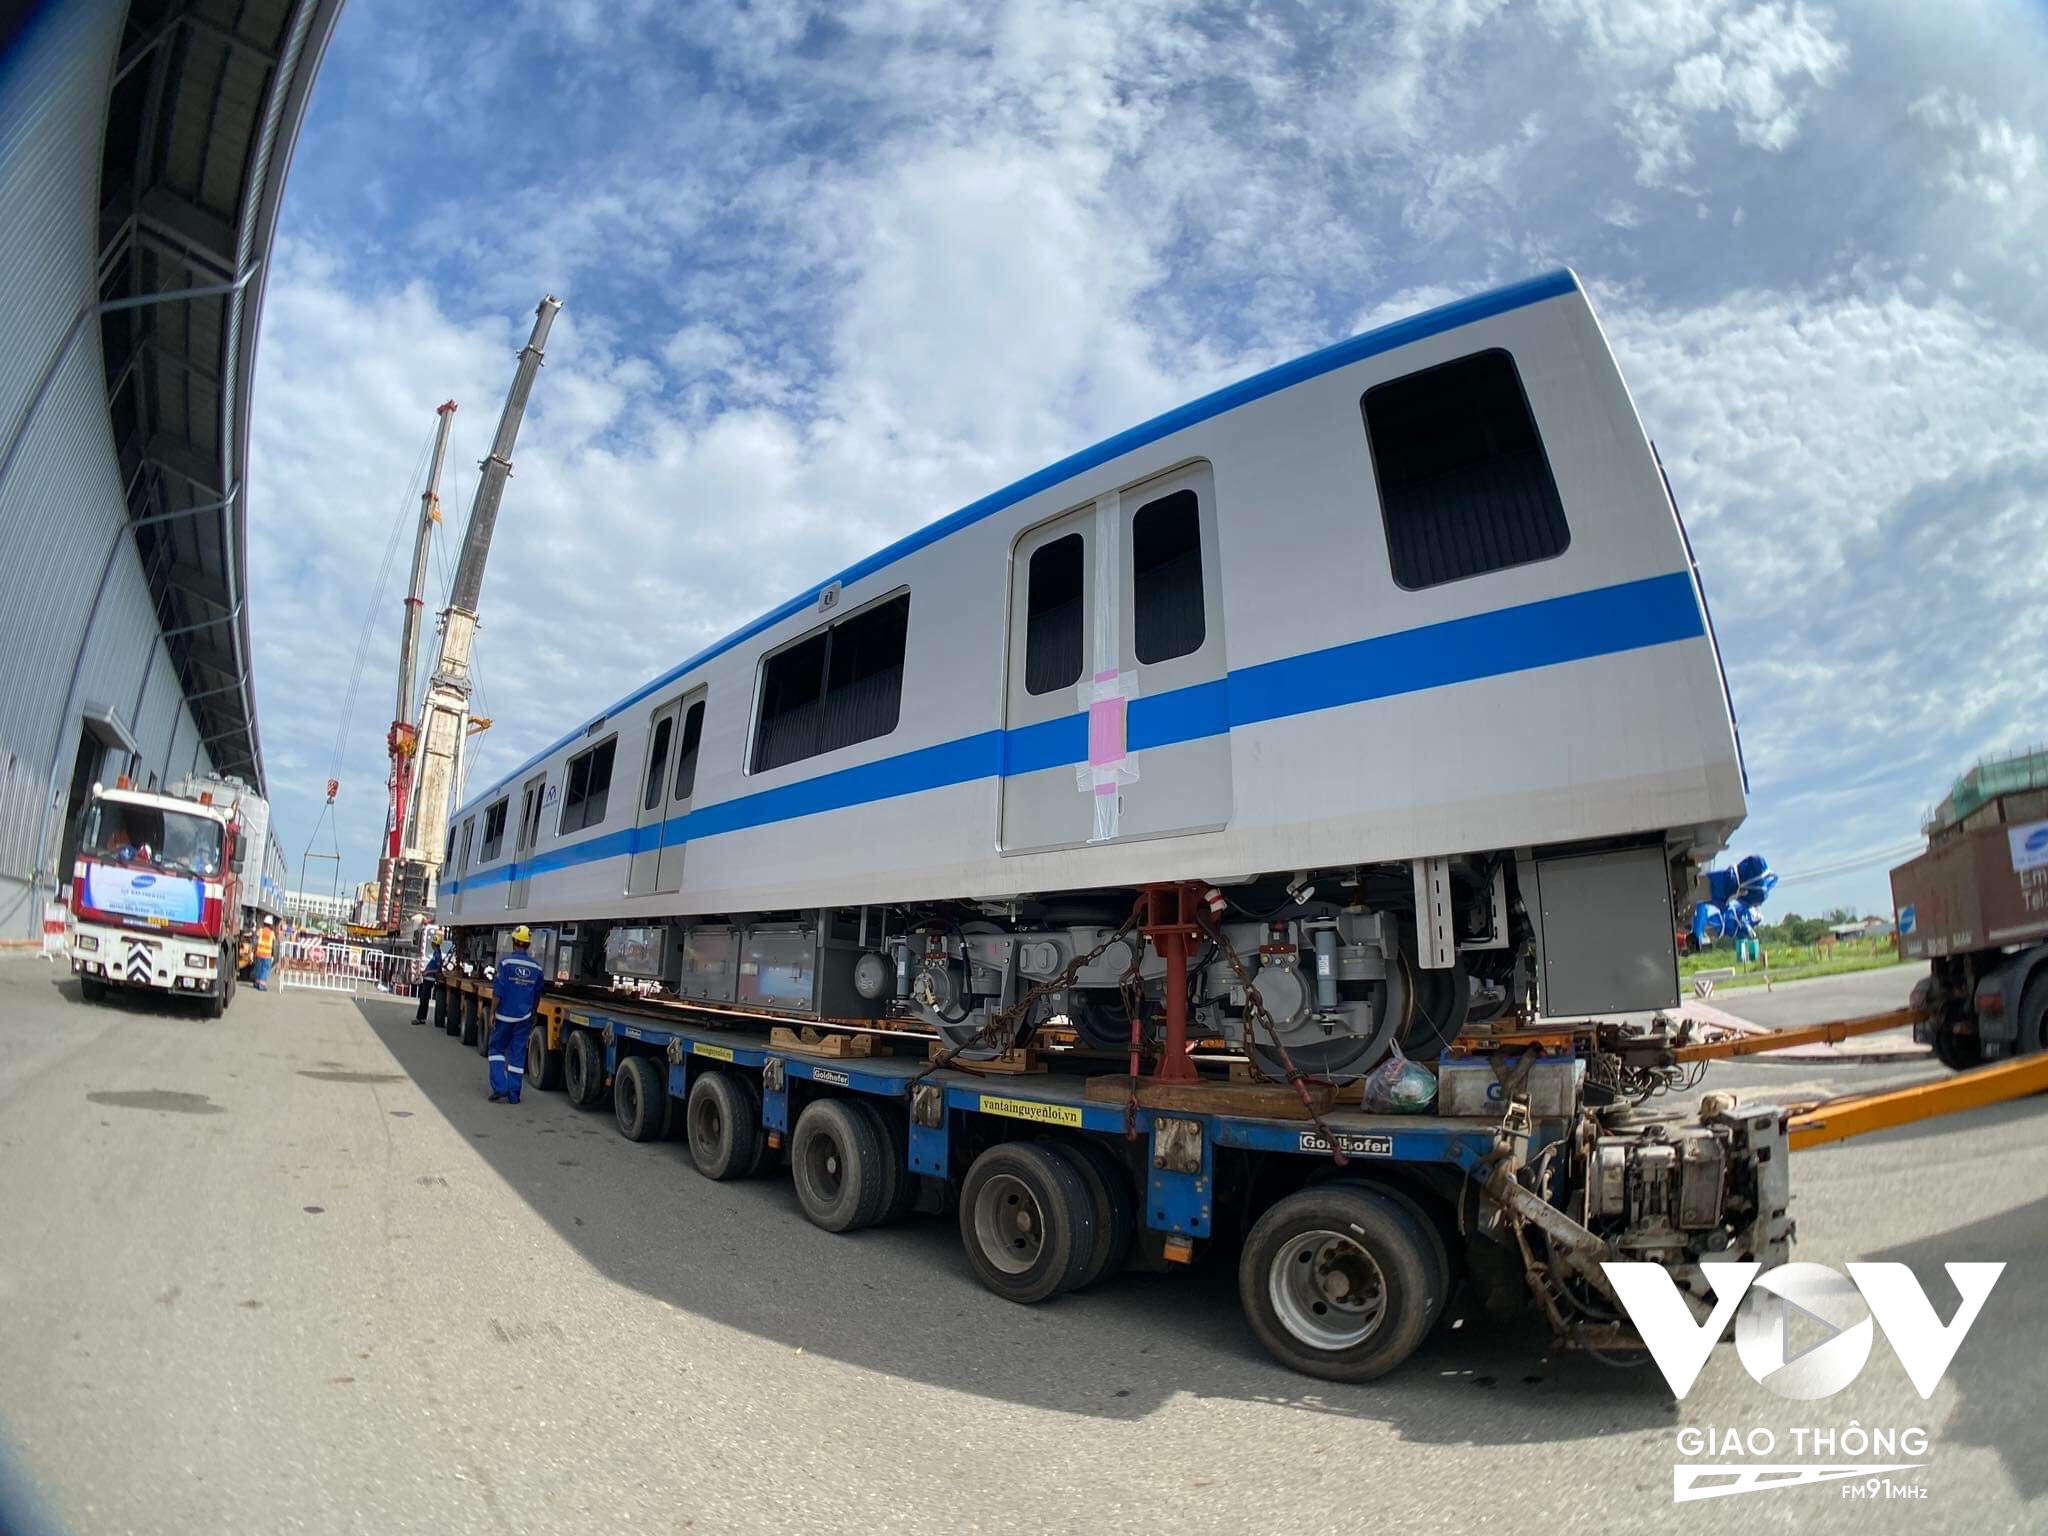 Từ rạng sáng, các kỹ sư cùng nhiều nhân viên của nhà thầu đã túc trực sẵn tại depot Long Bình để kiểm tra, chuẩn bị cho việc nâng hạ các toa tàu lên đường ray.